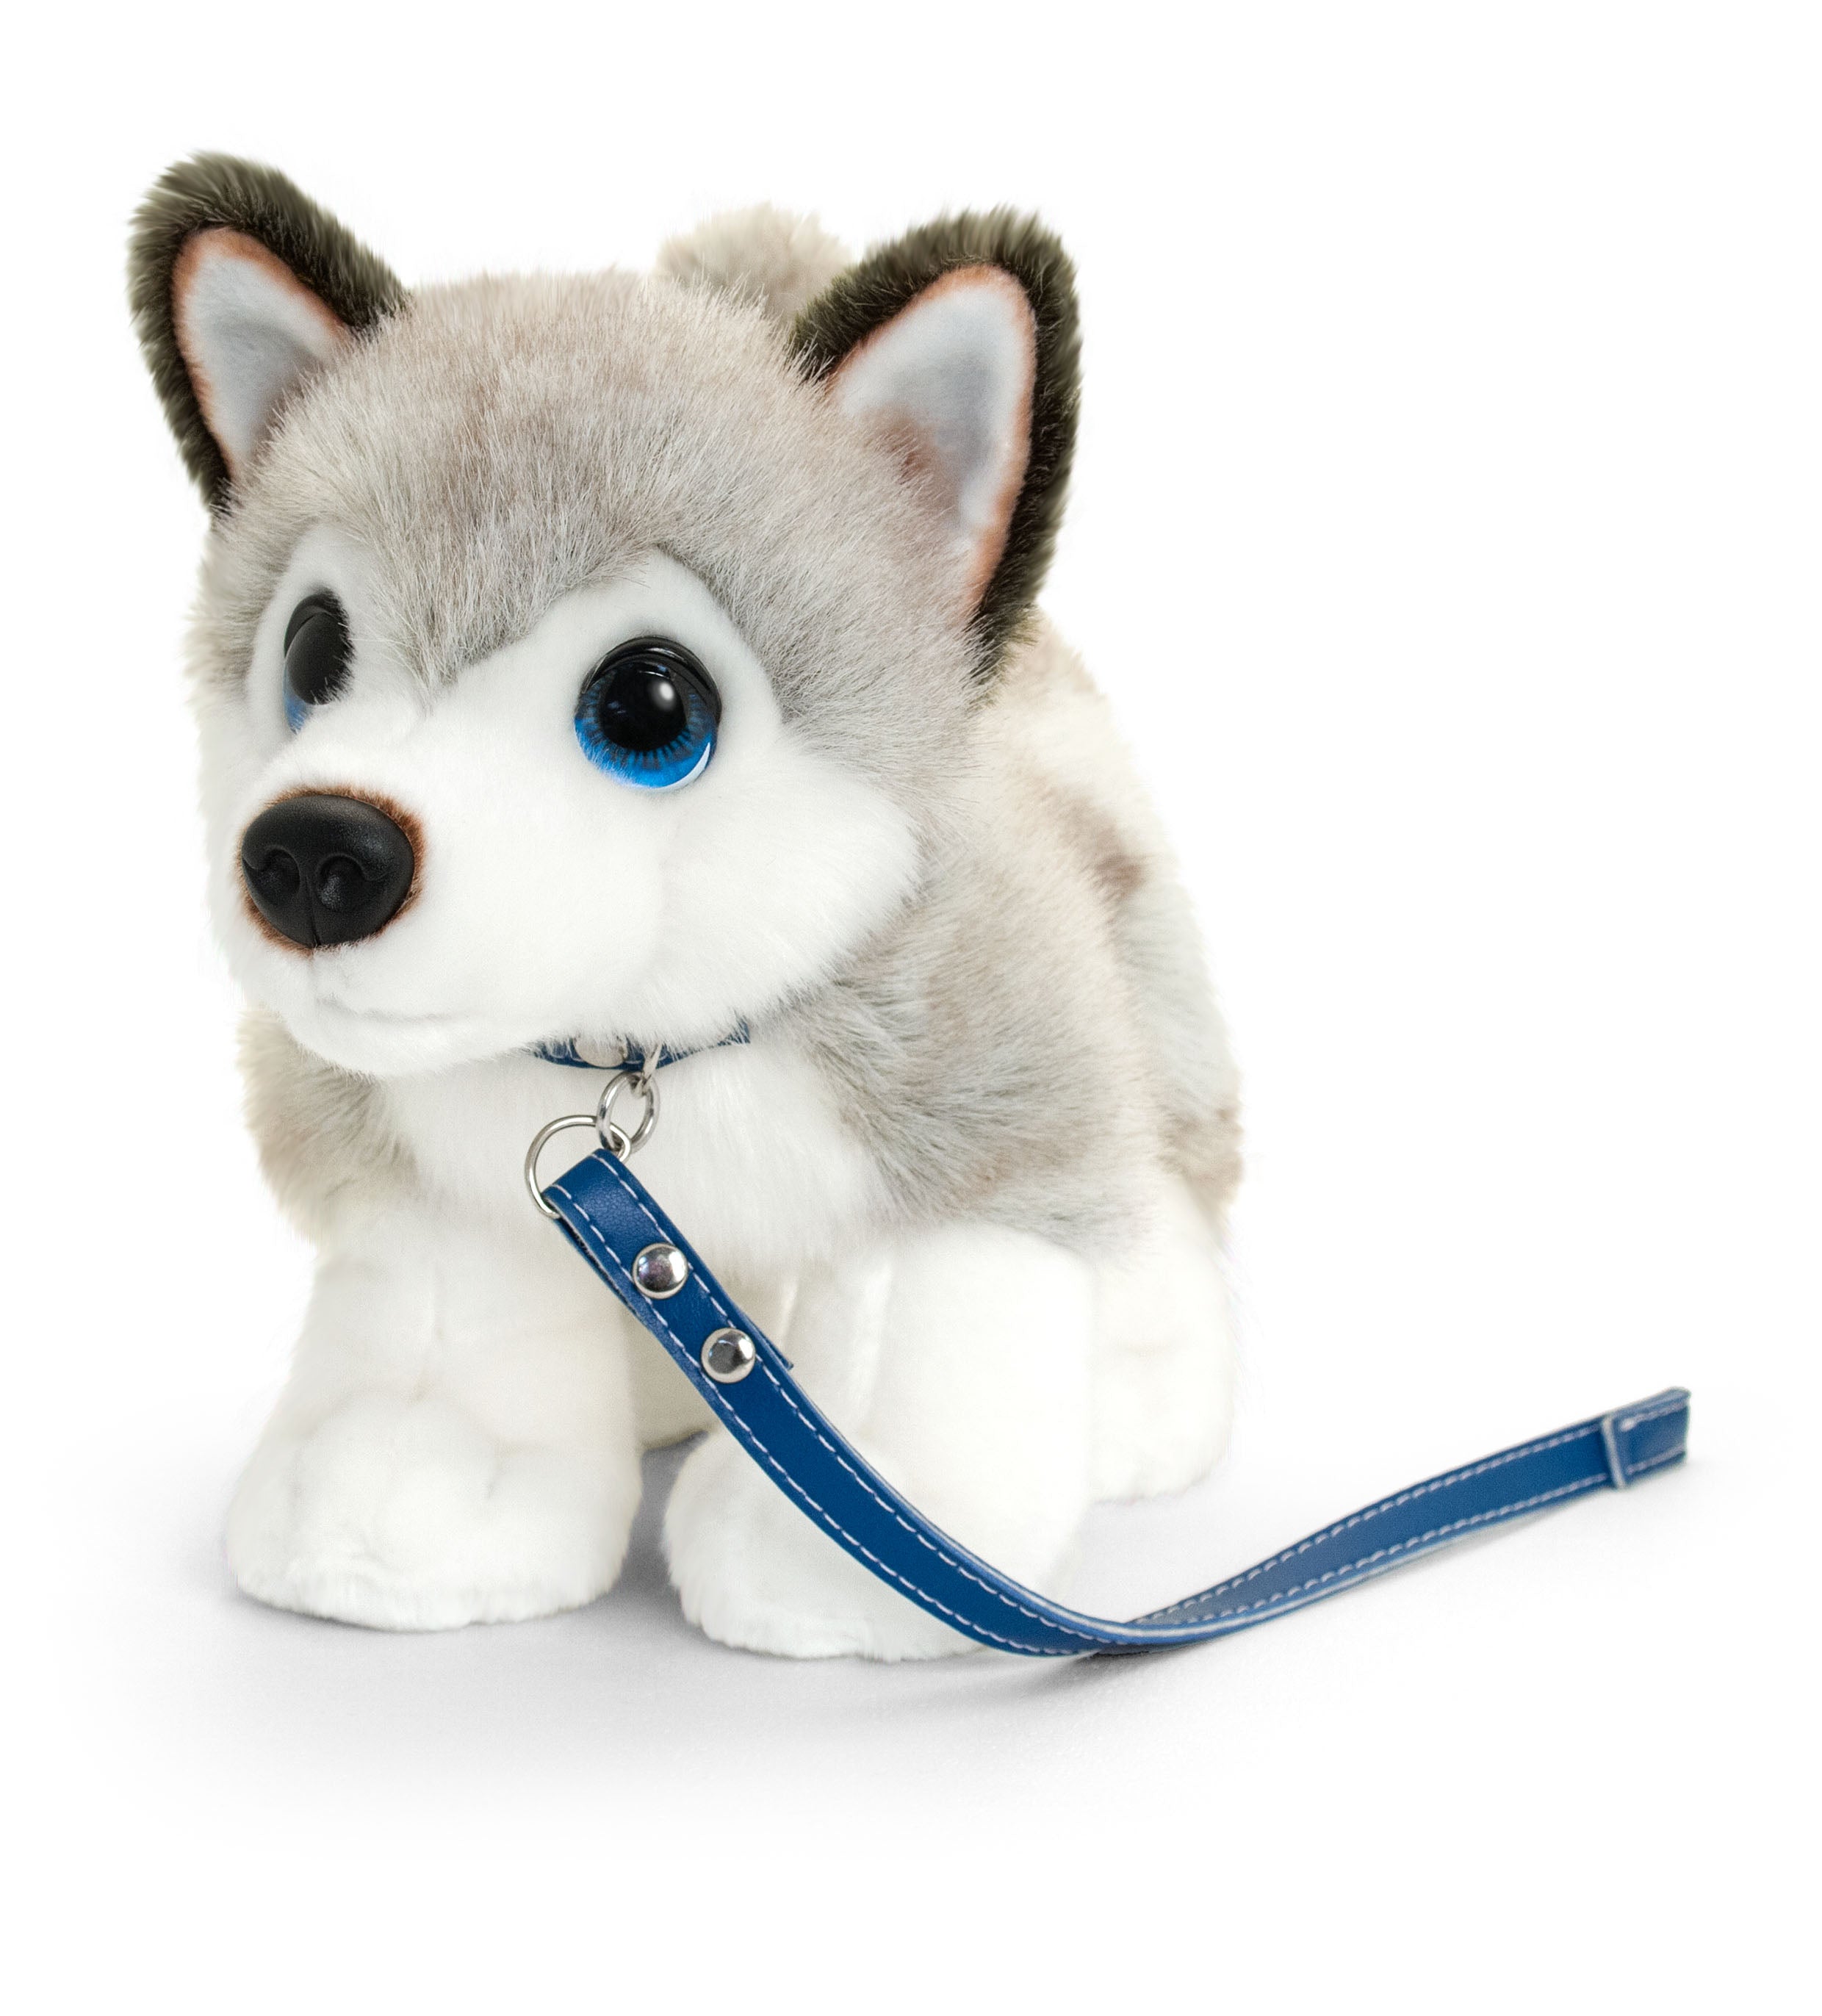 Keel-Toys-30cm-Signature-Cuddle-Puppy-Dog-On-Lead-Husky